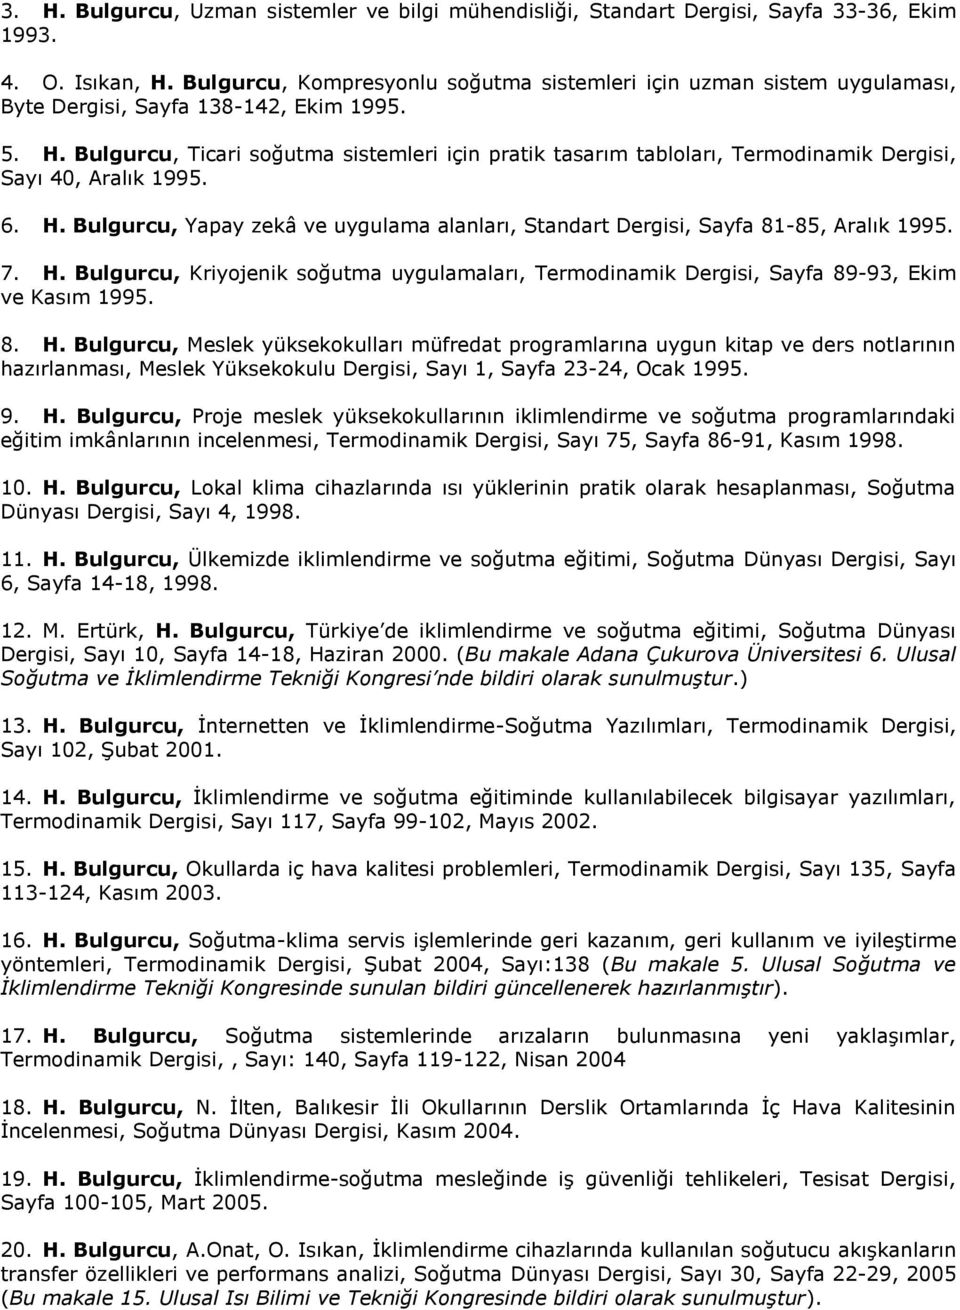 Bulgurcu, Ticari soğutma sistemleri için pratik tasarım tabloları, Termodinamik Dergisi, Sayı 40, Aralık 1995. 6. H.